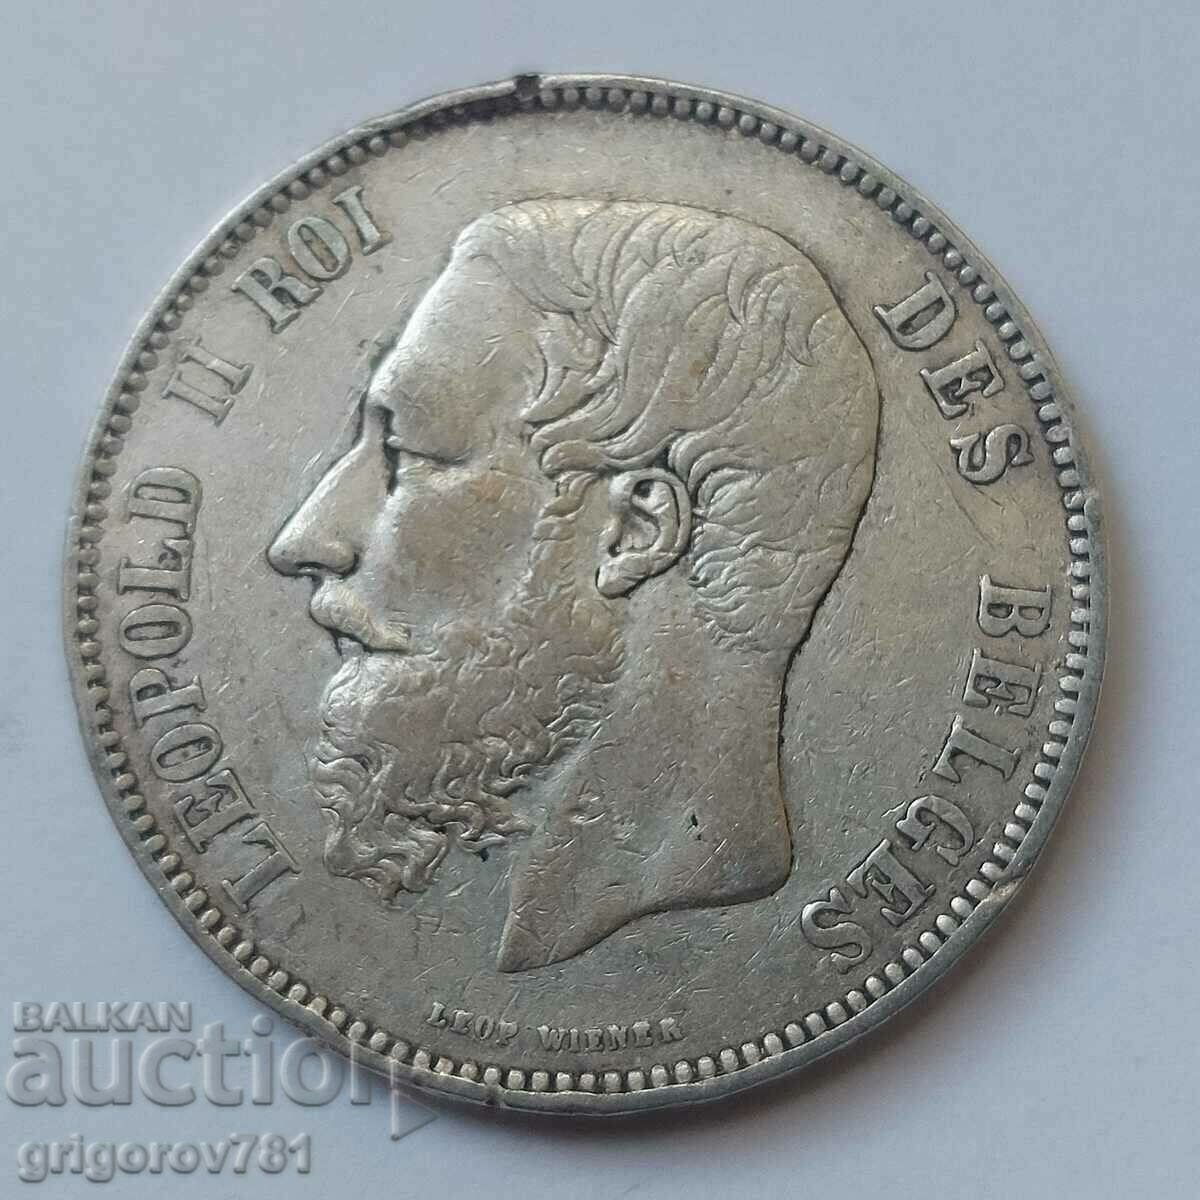 5 Francs Silver Belgium 1867 Silver Coin #155